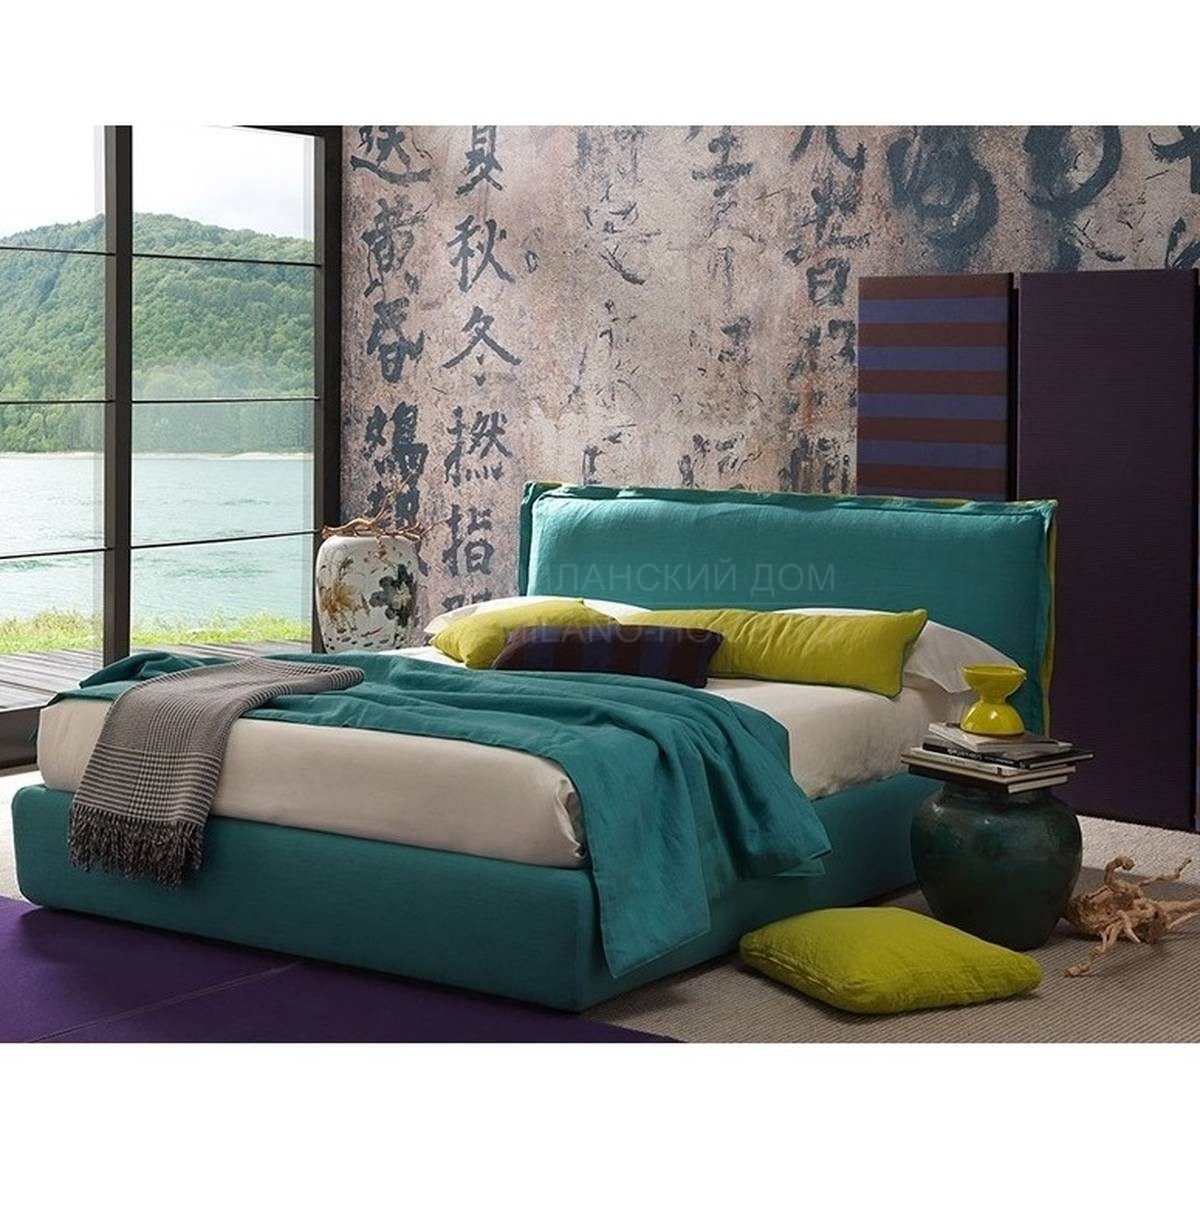 Двуспальная кровать Handsome из Италии фабрики BOLZAN